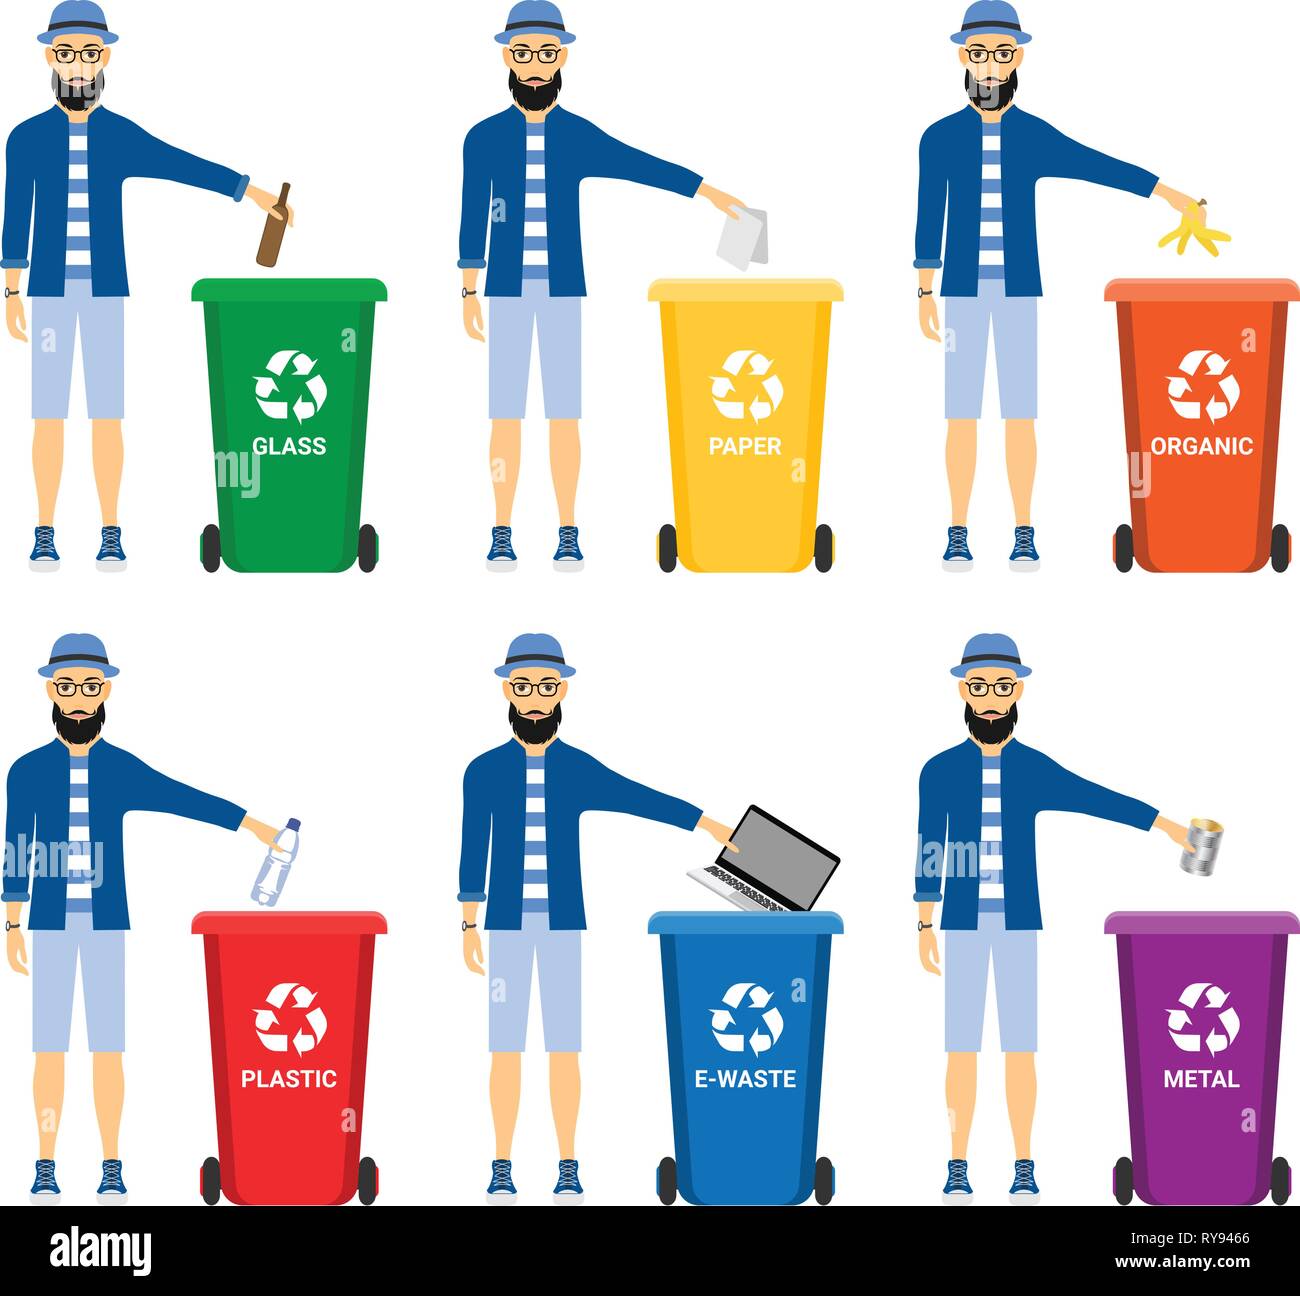 Abfall in Mülltonnen mit sortiert Müll Vector Icons. Recycling Mülltrennung  Sammlung und Recycling auf weißem Hintergrund Stock-Vektorgrafik - Alamy